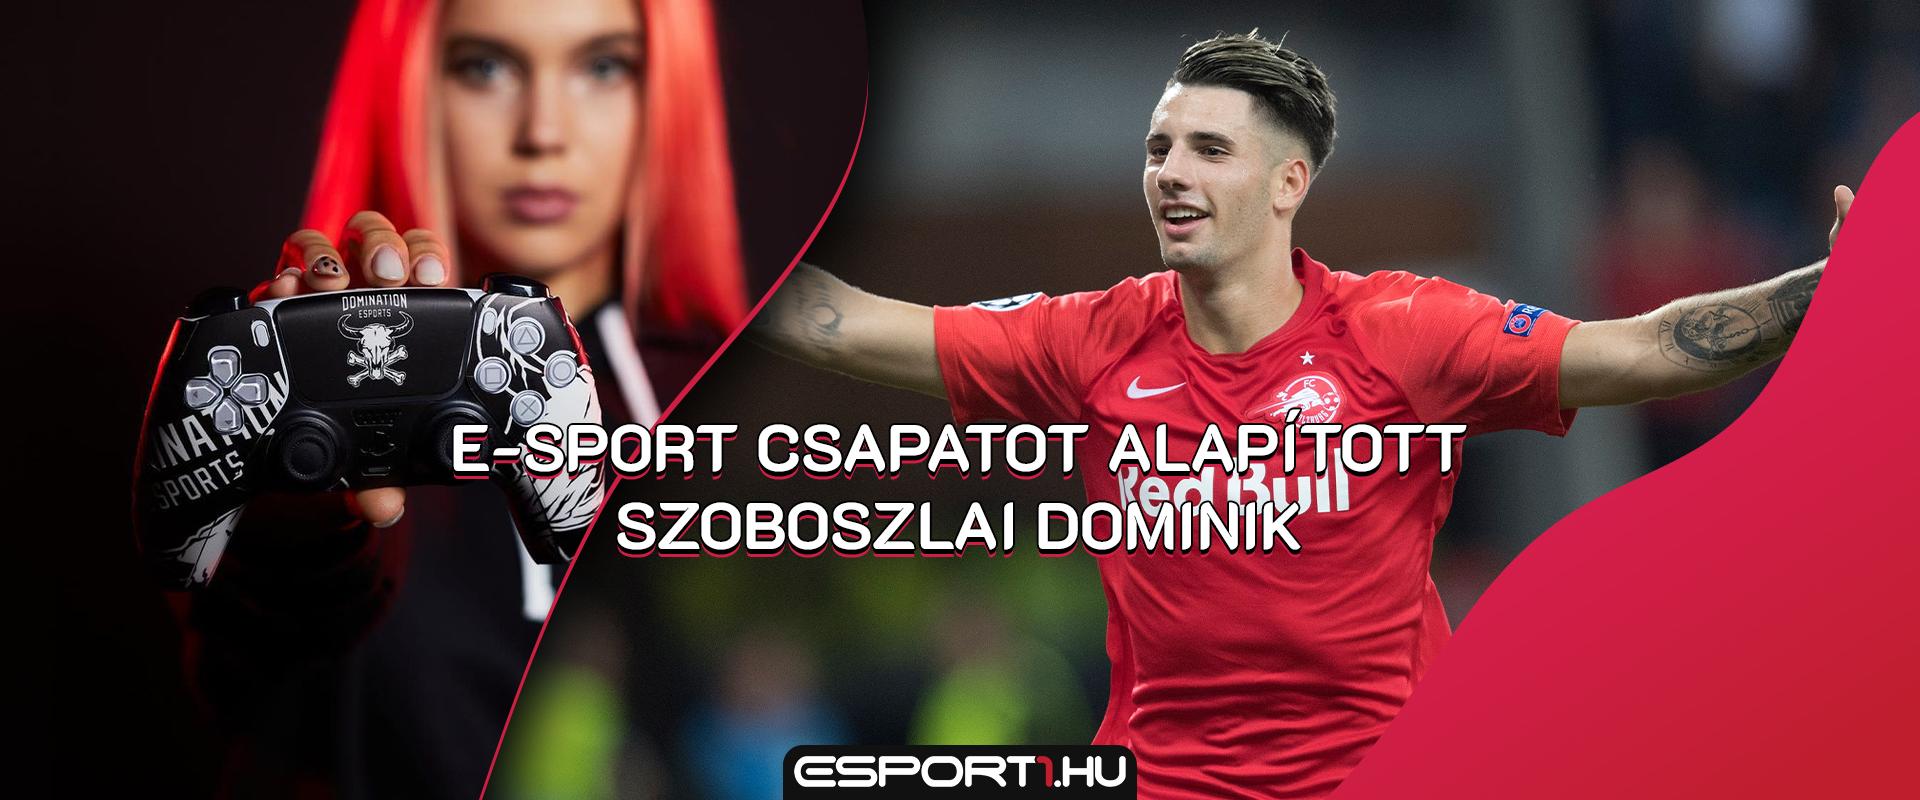 Szoboszlai Dominik saját e-sport csapatot indít, és már meg is van az első játékosa